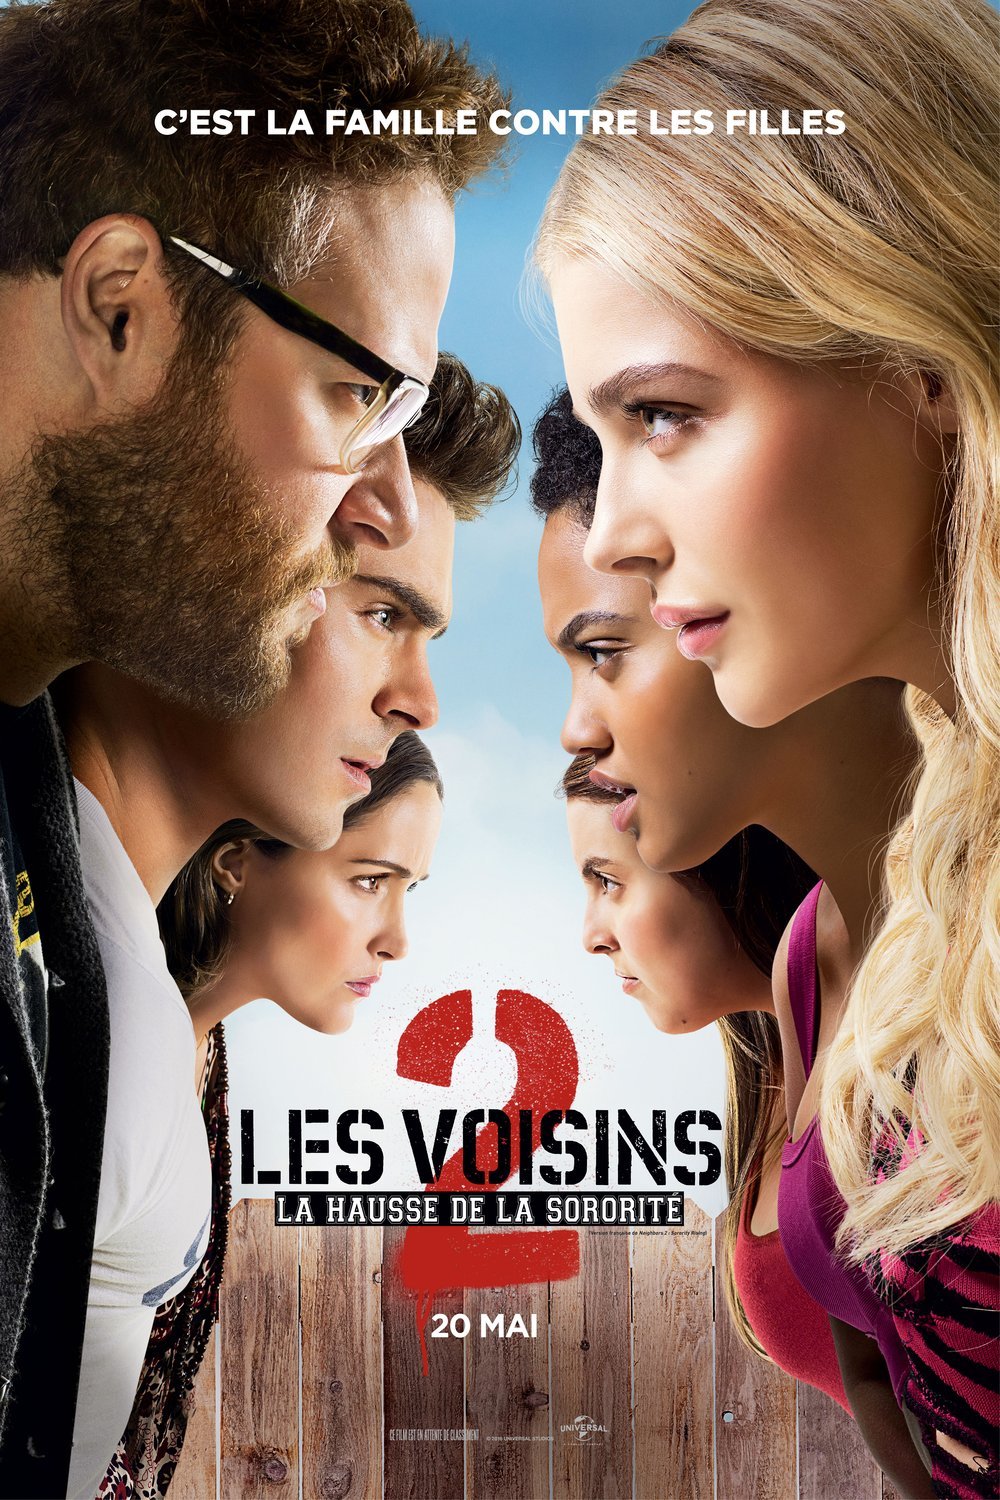 Poster of the movie Les Voisins 2: La hausse de la sororité